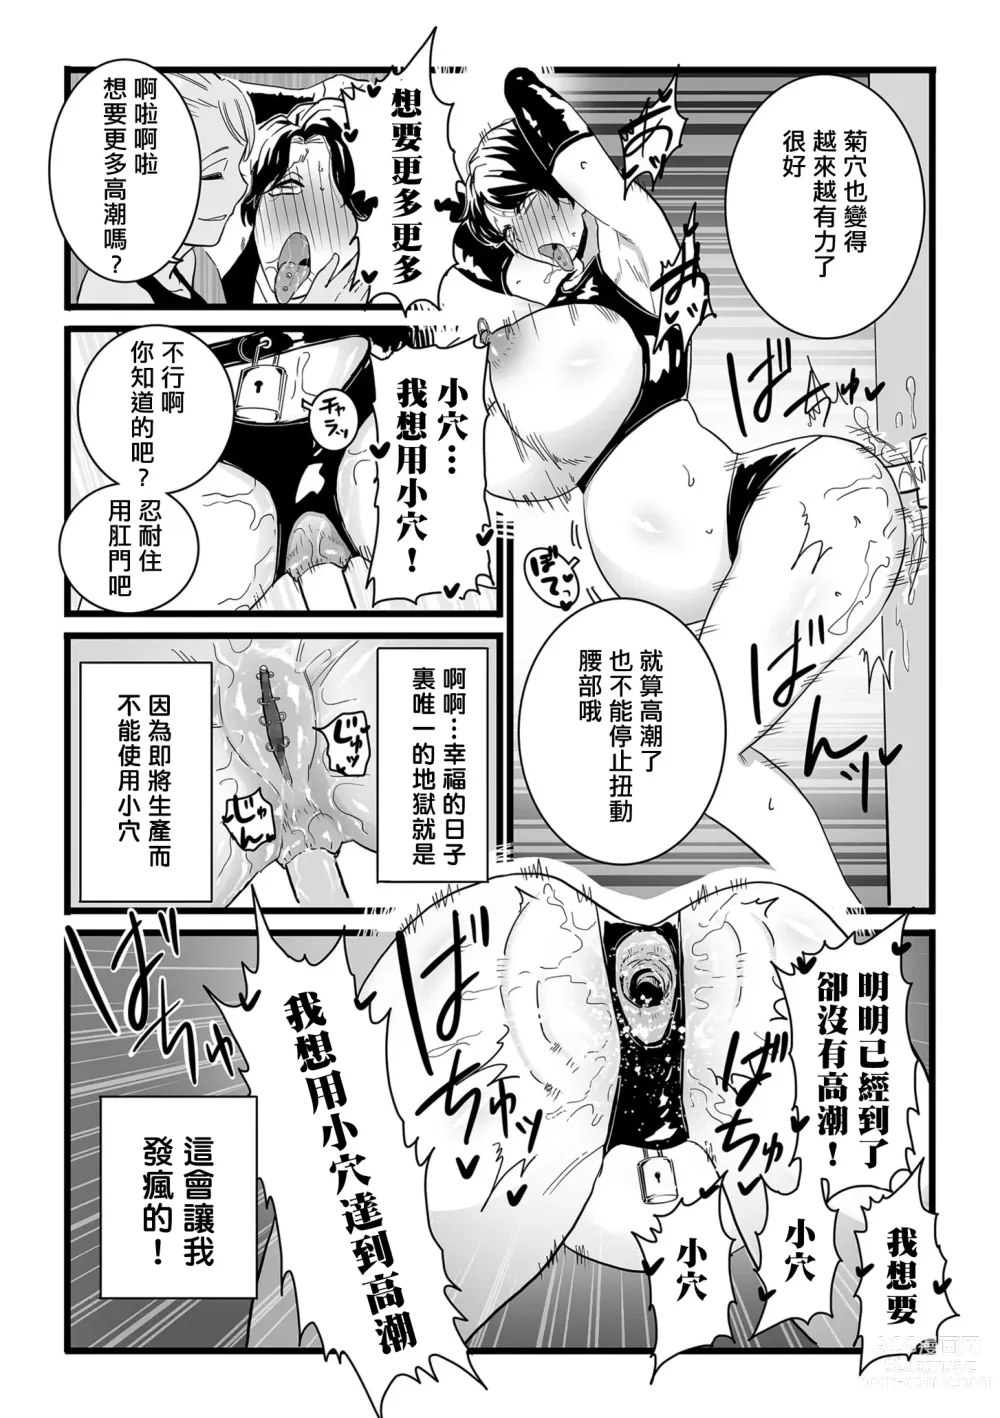 Page 7 of manga Mesu Dorei Sengen denshi tokusou ban egaki oroshi manga